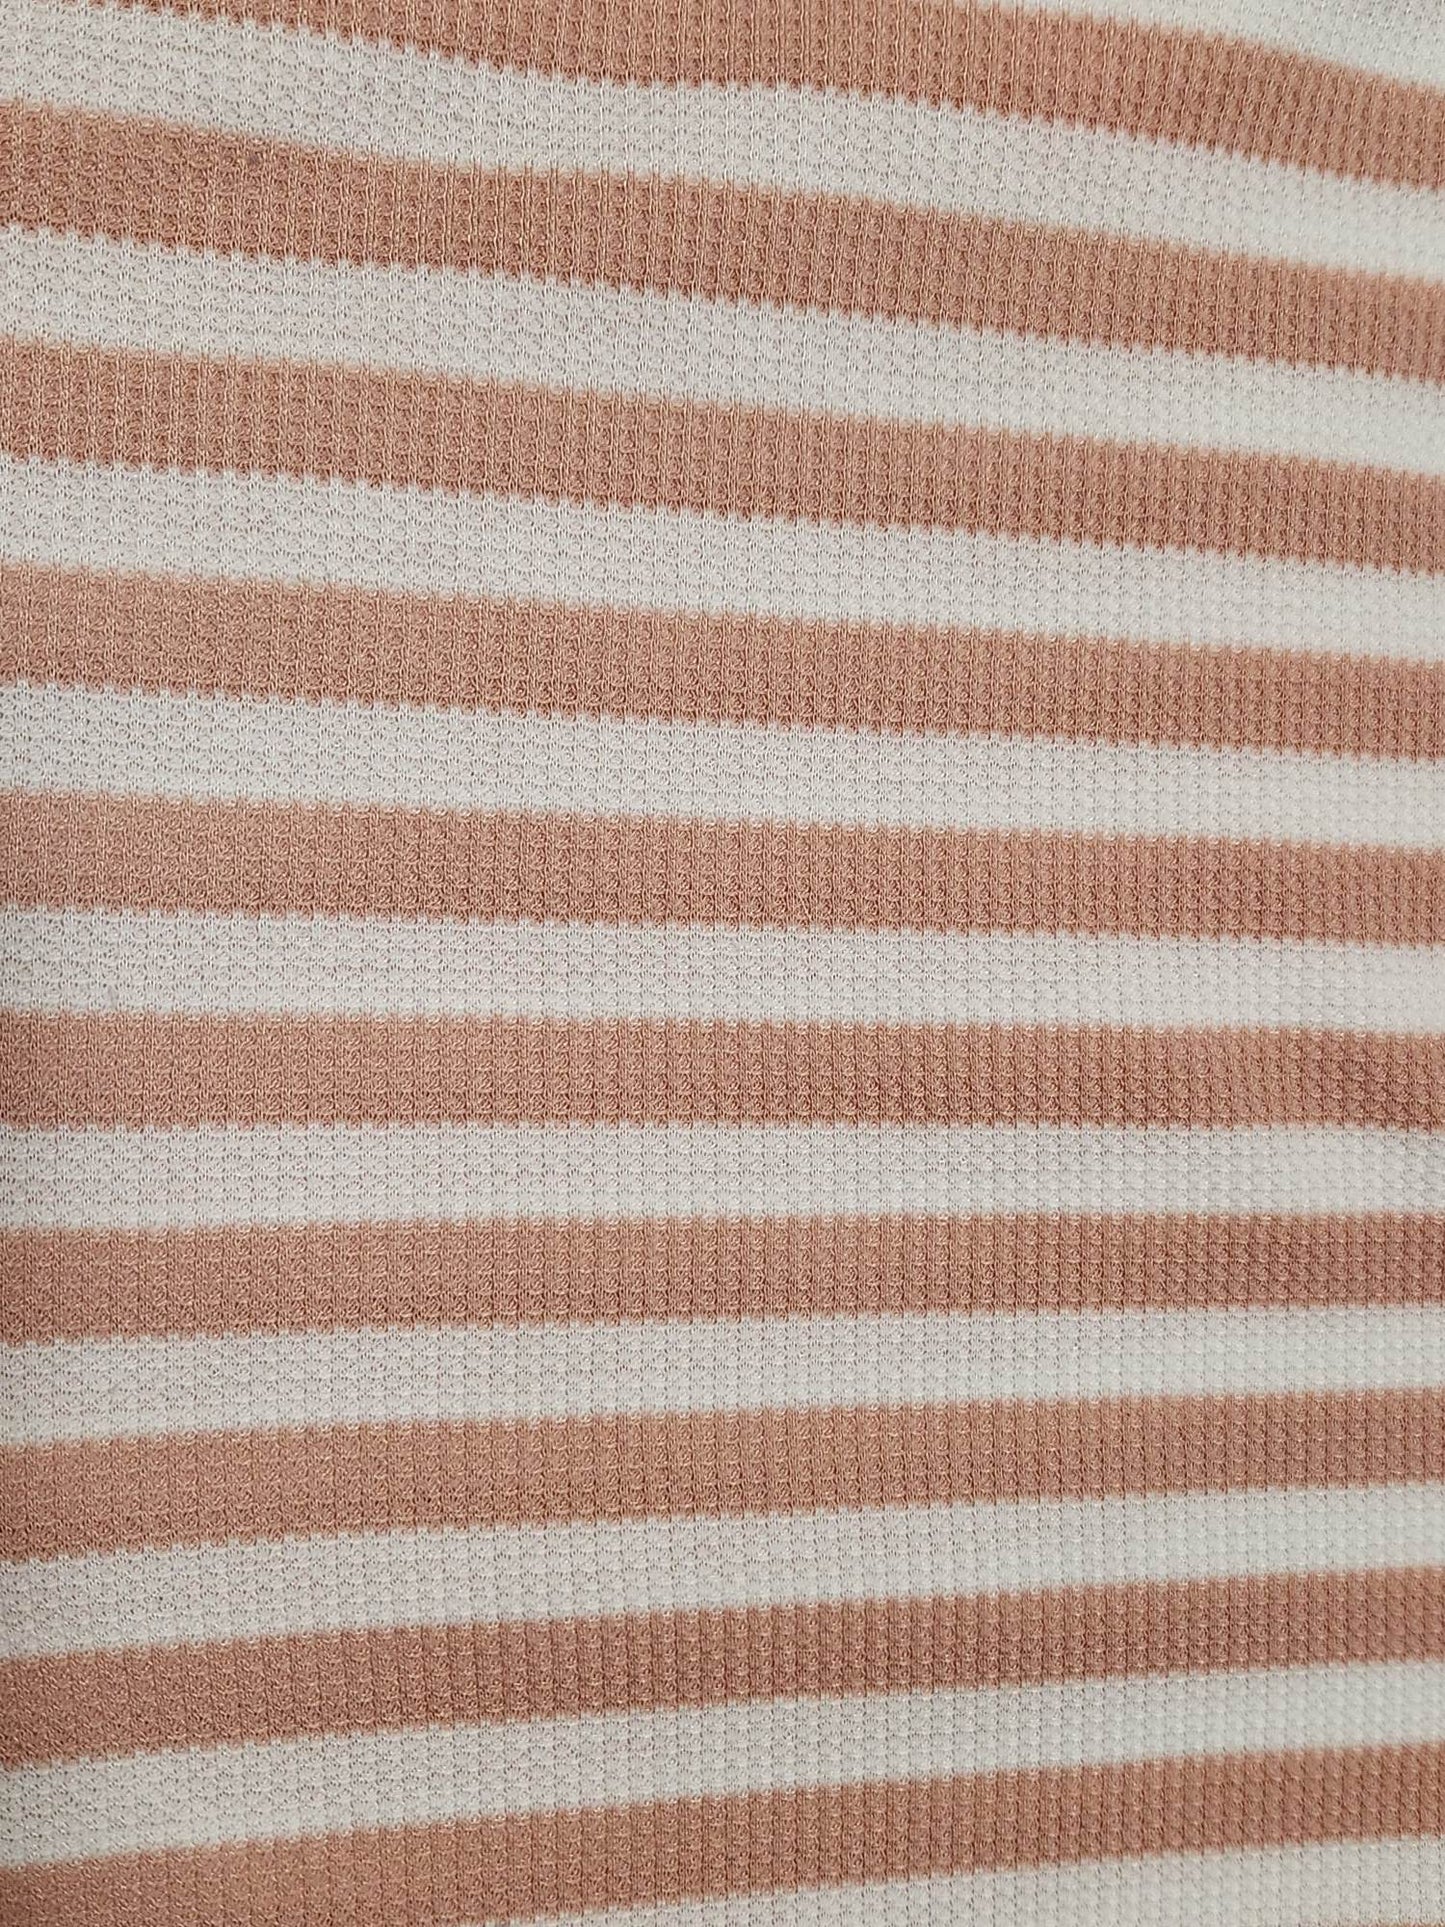 Euro Waffle Knit- Pink Striped